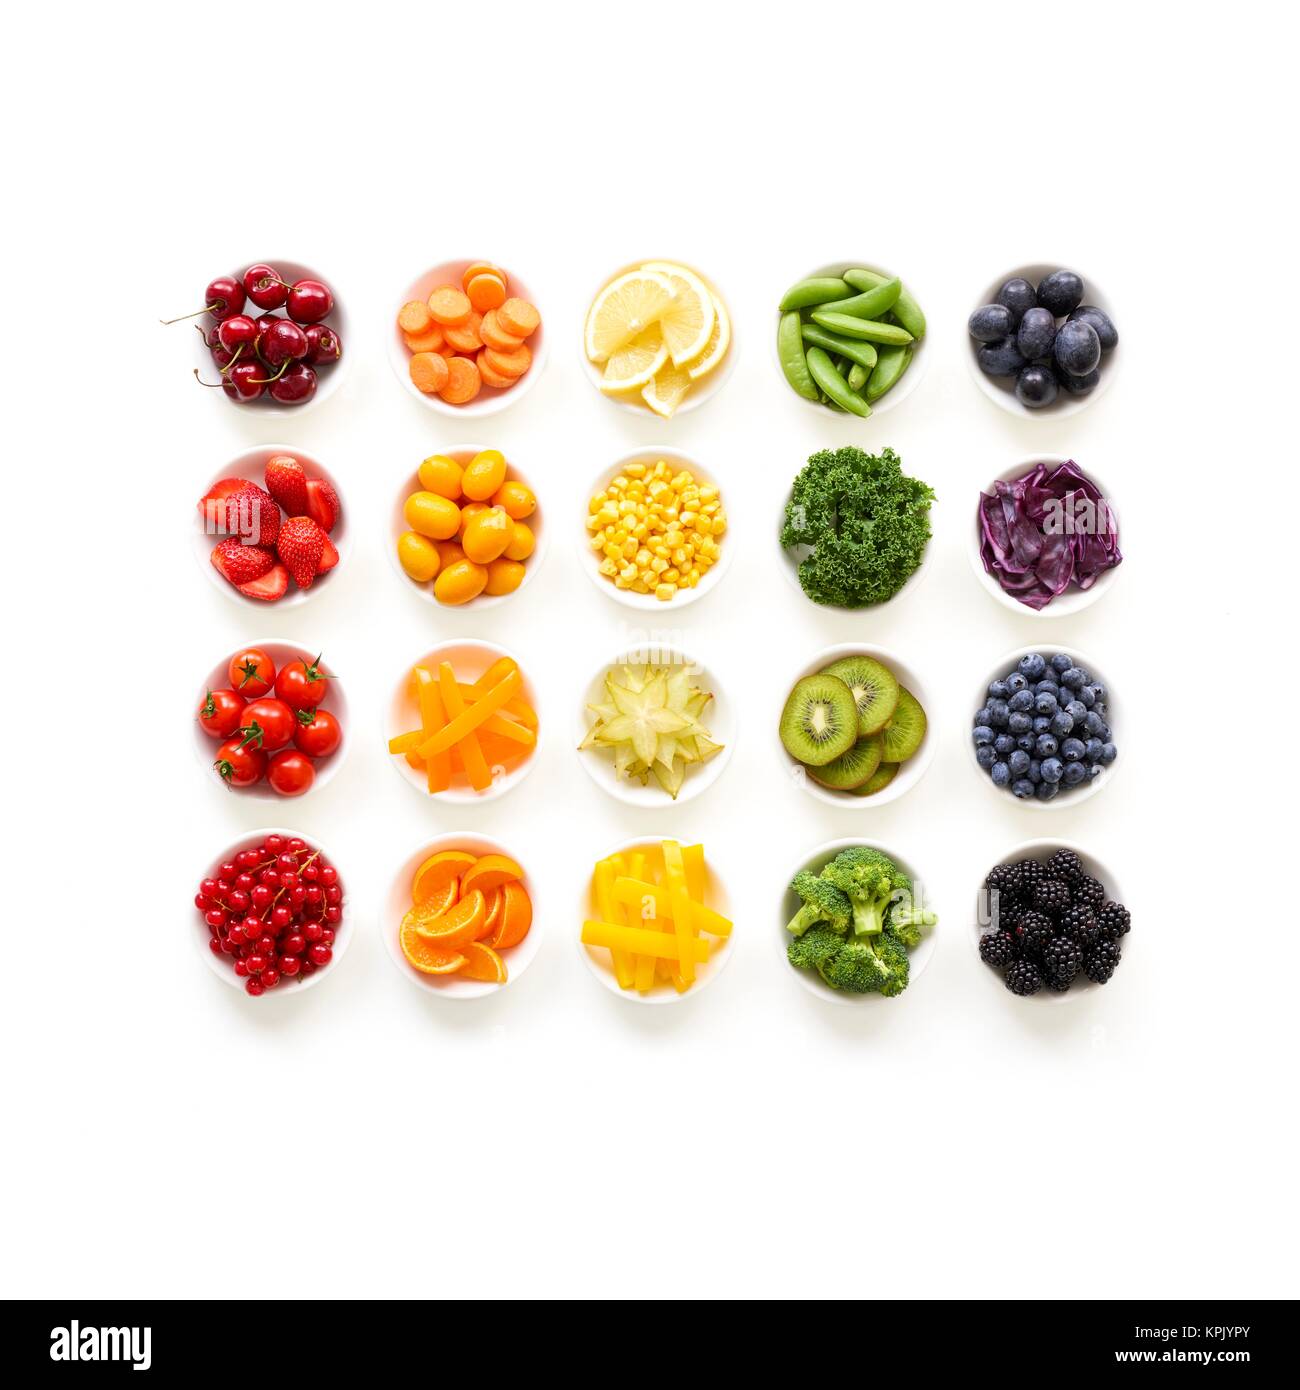 Frischen bunten Obst und Gemüse in Gerichten, Studio gedreht. Stockfoto